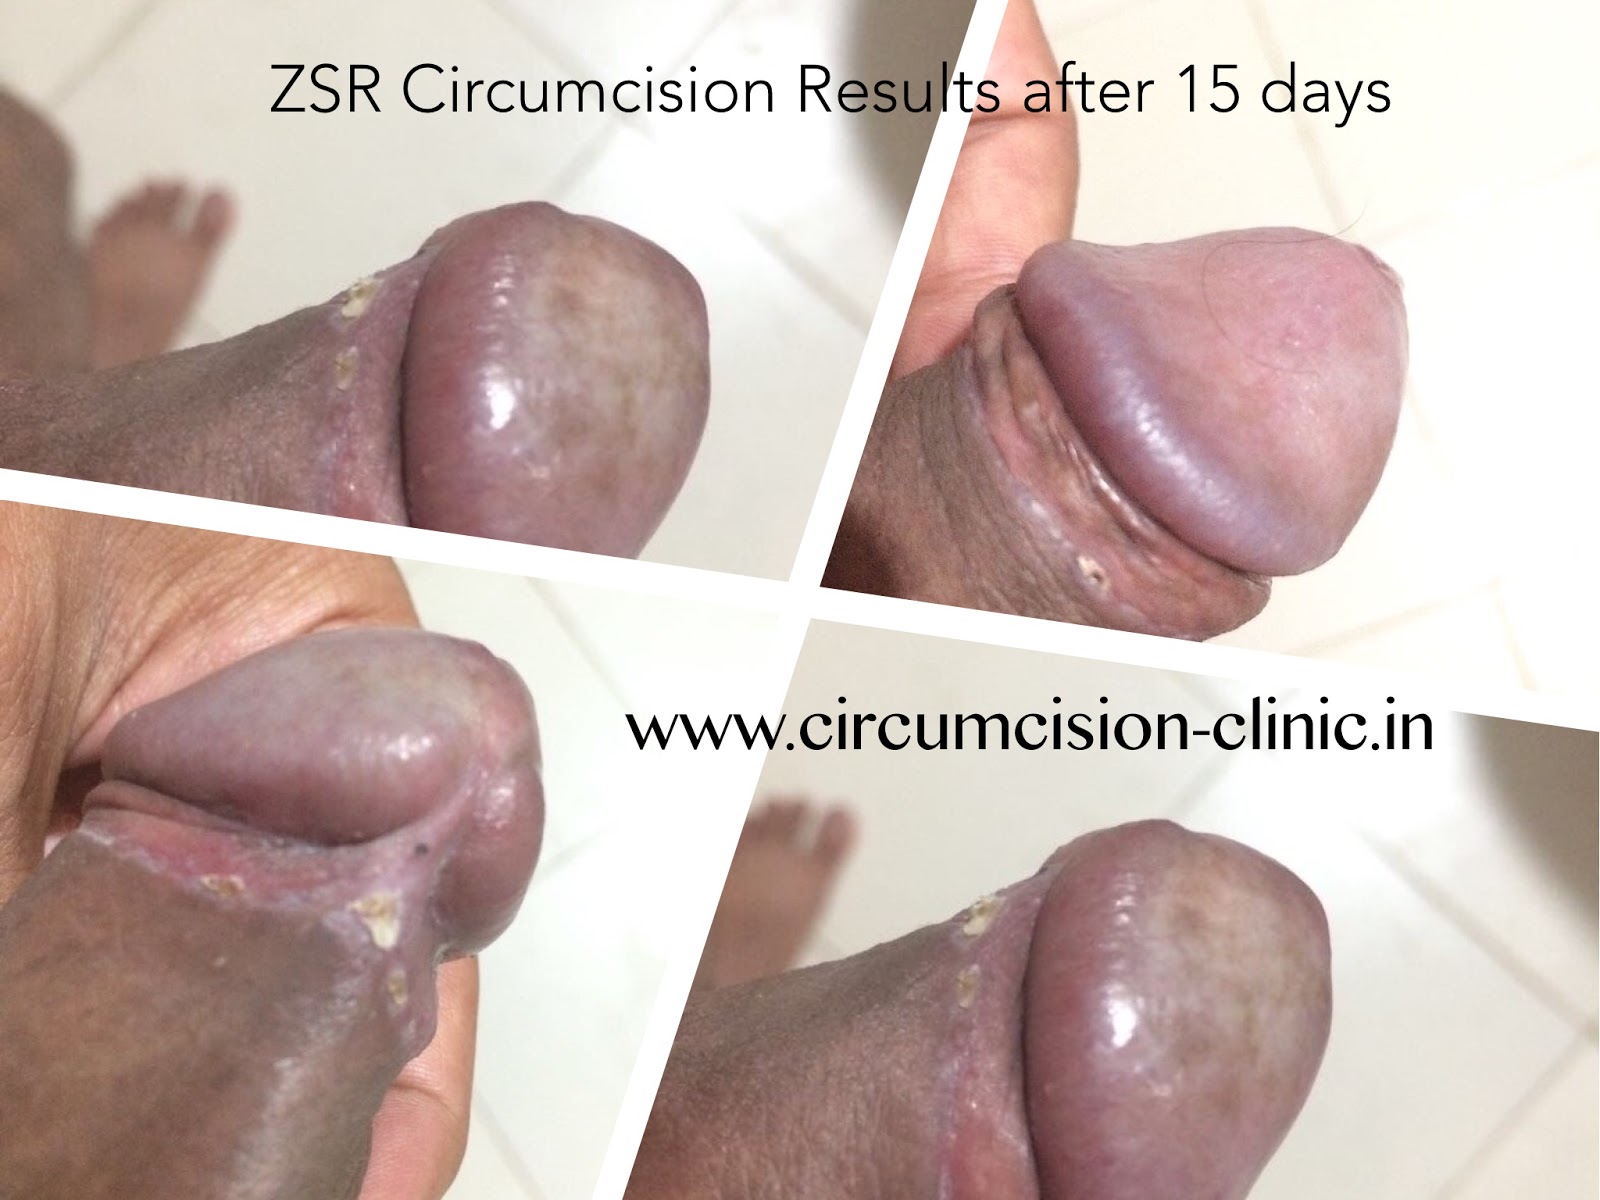 www.circumcision-clinic.in.